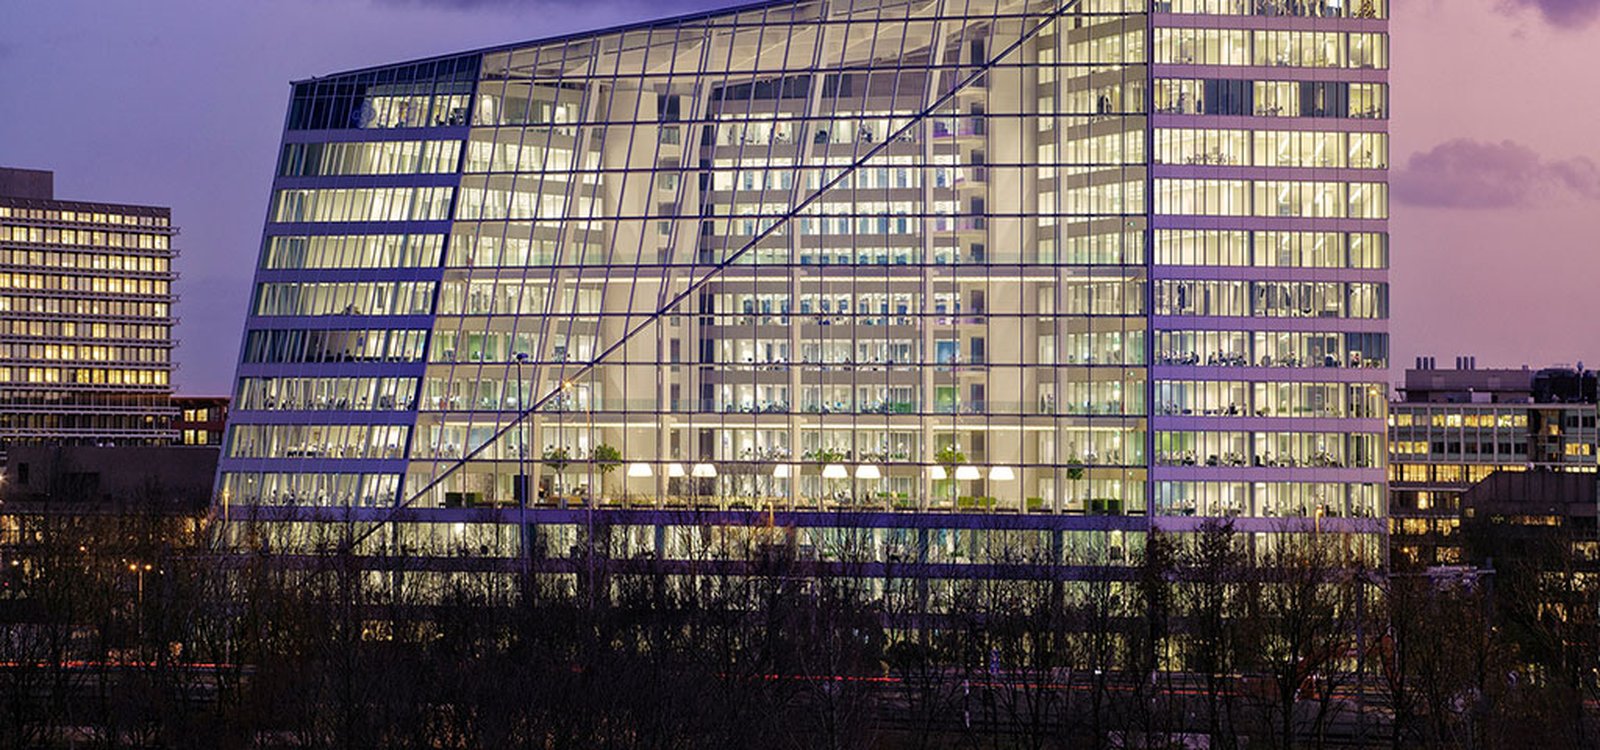 <p>“The Edge” (“El filo”), en Amsterdam, fue considerado “el Edificio de Oficinas Más Sostenible del Mundo” en 2014. </p>
